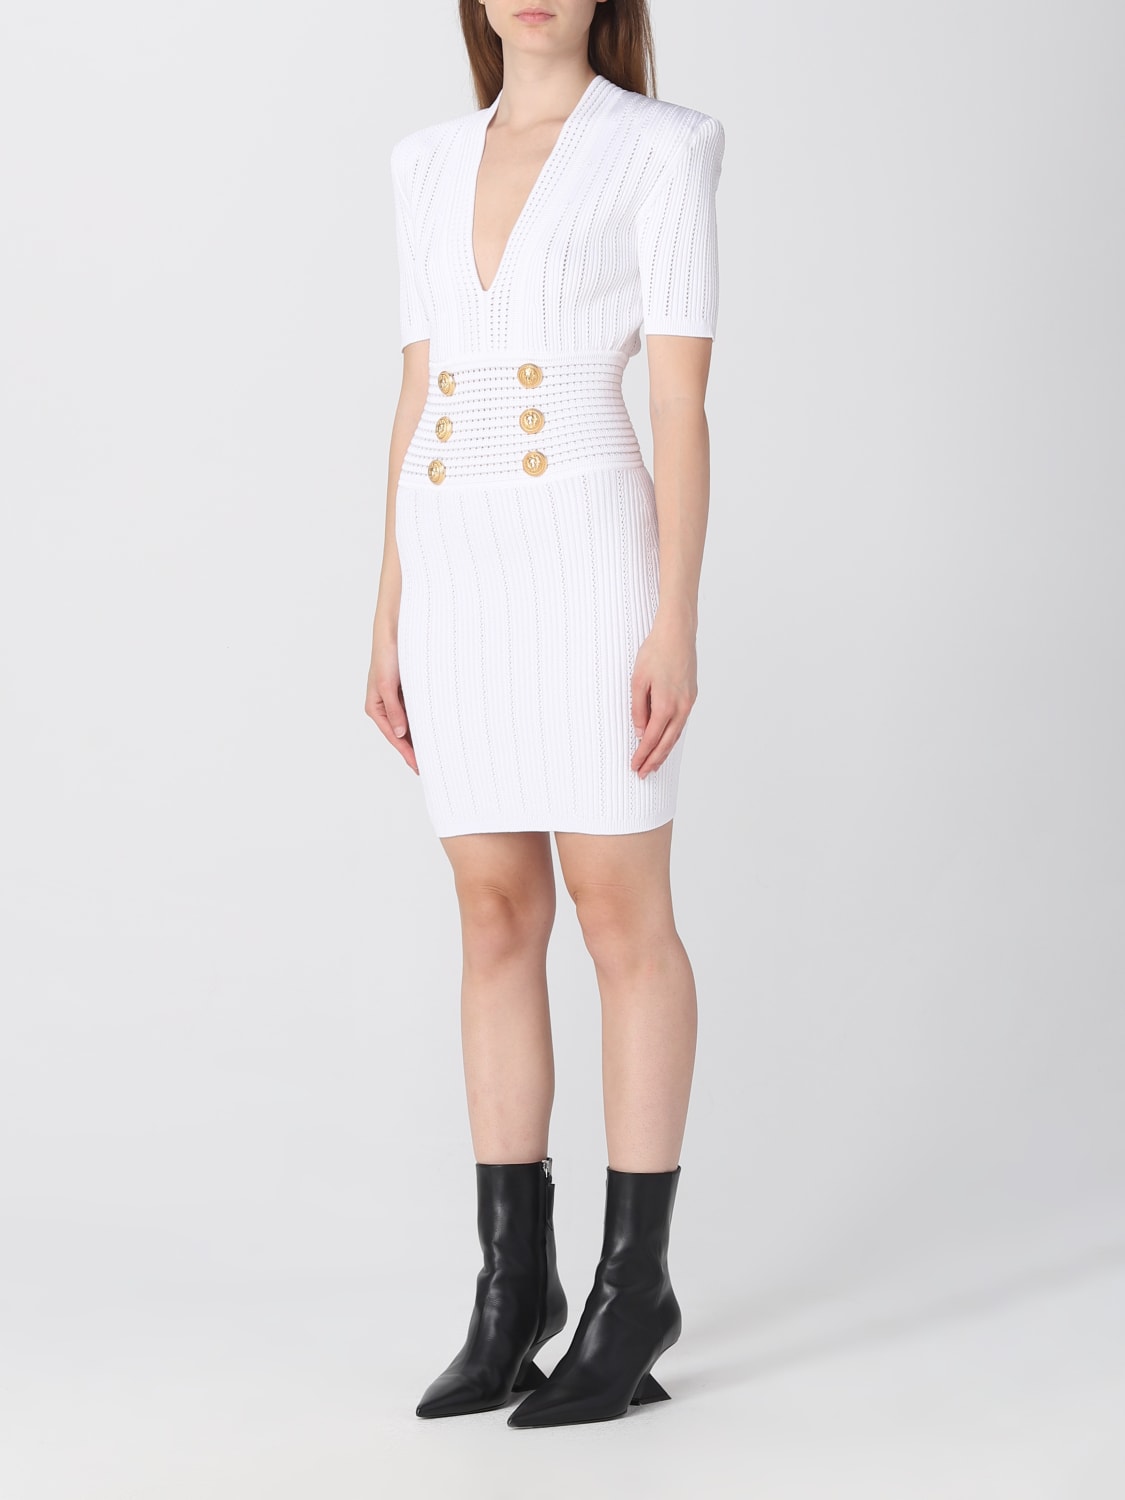 Delvis atom Undertrykkelse BALMAIN: dress in sustainable viscose blend - White | Balmain dress  BF1R6040KE18 online at GIGLIO.COM